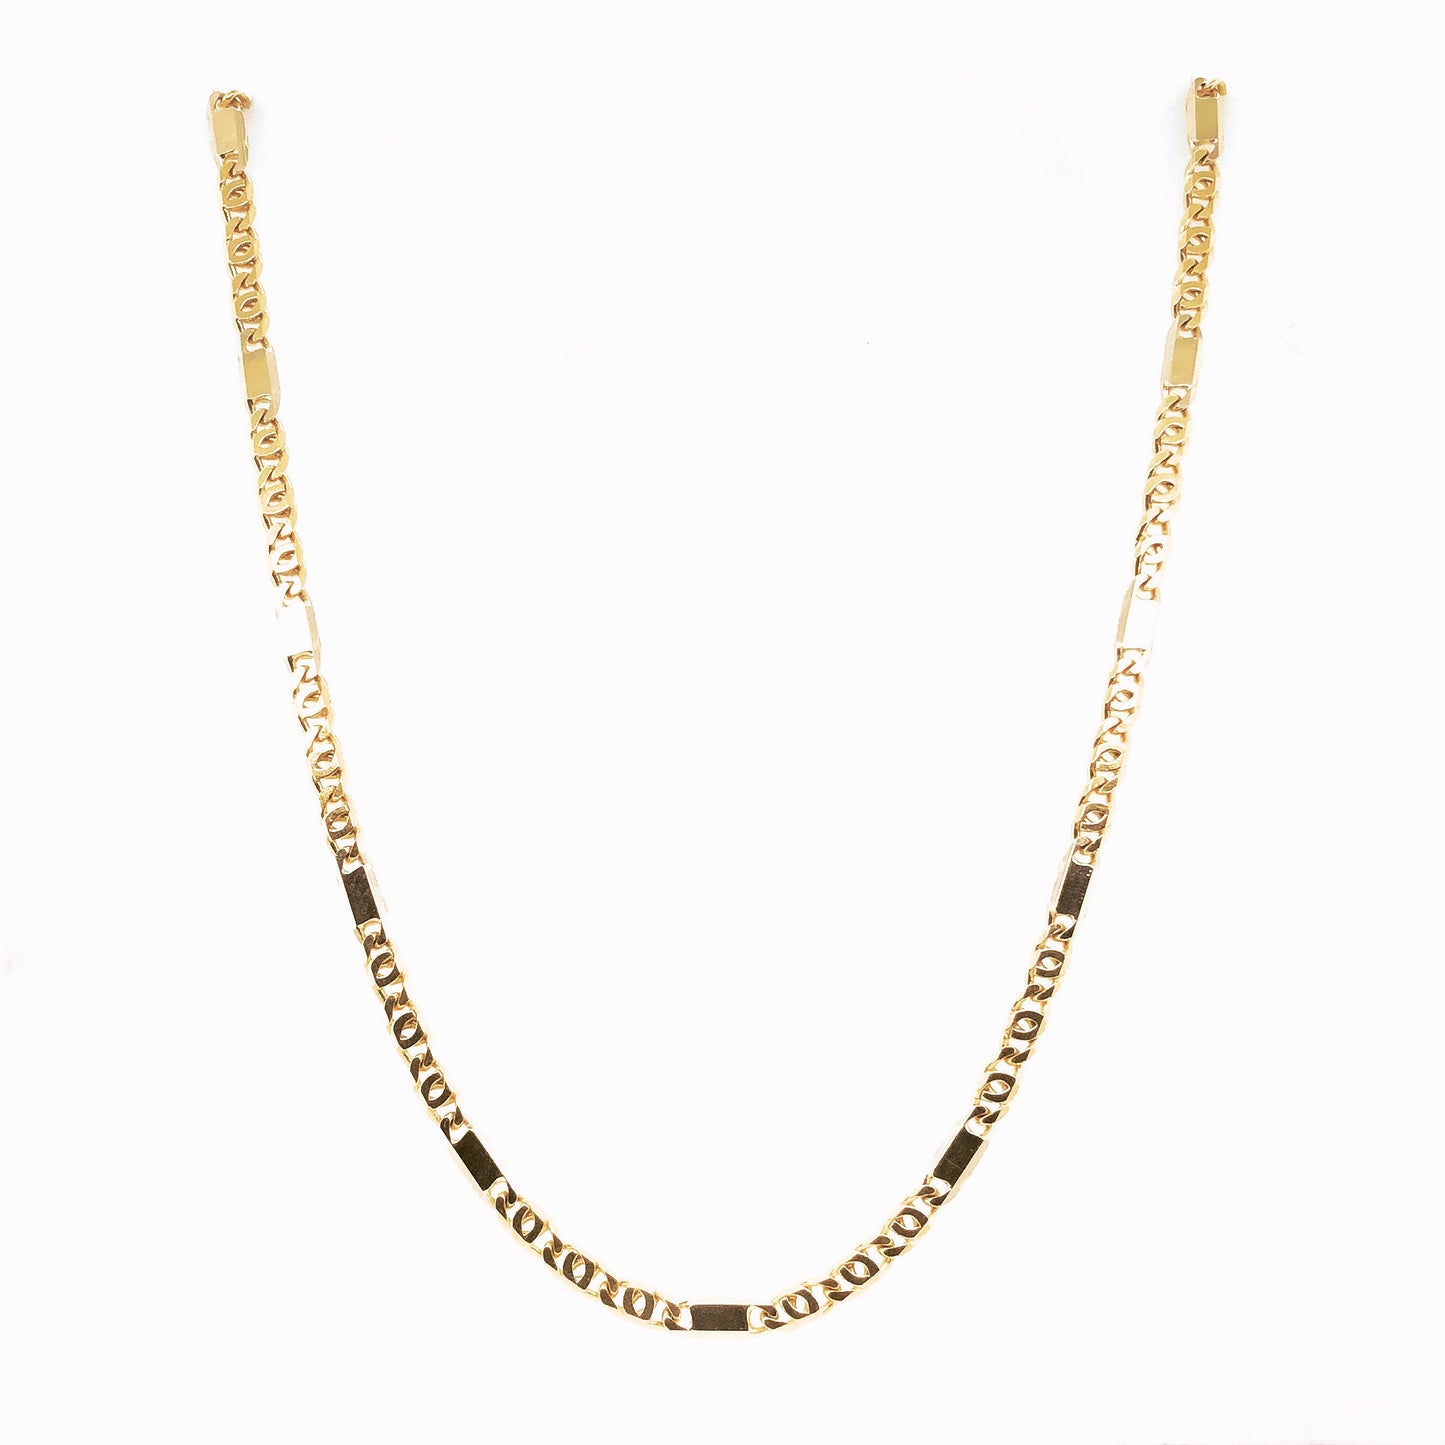 Halskette Gold 750 / 18k